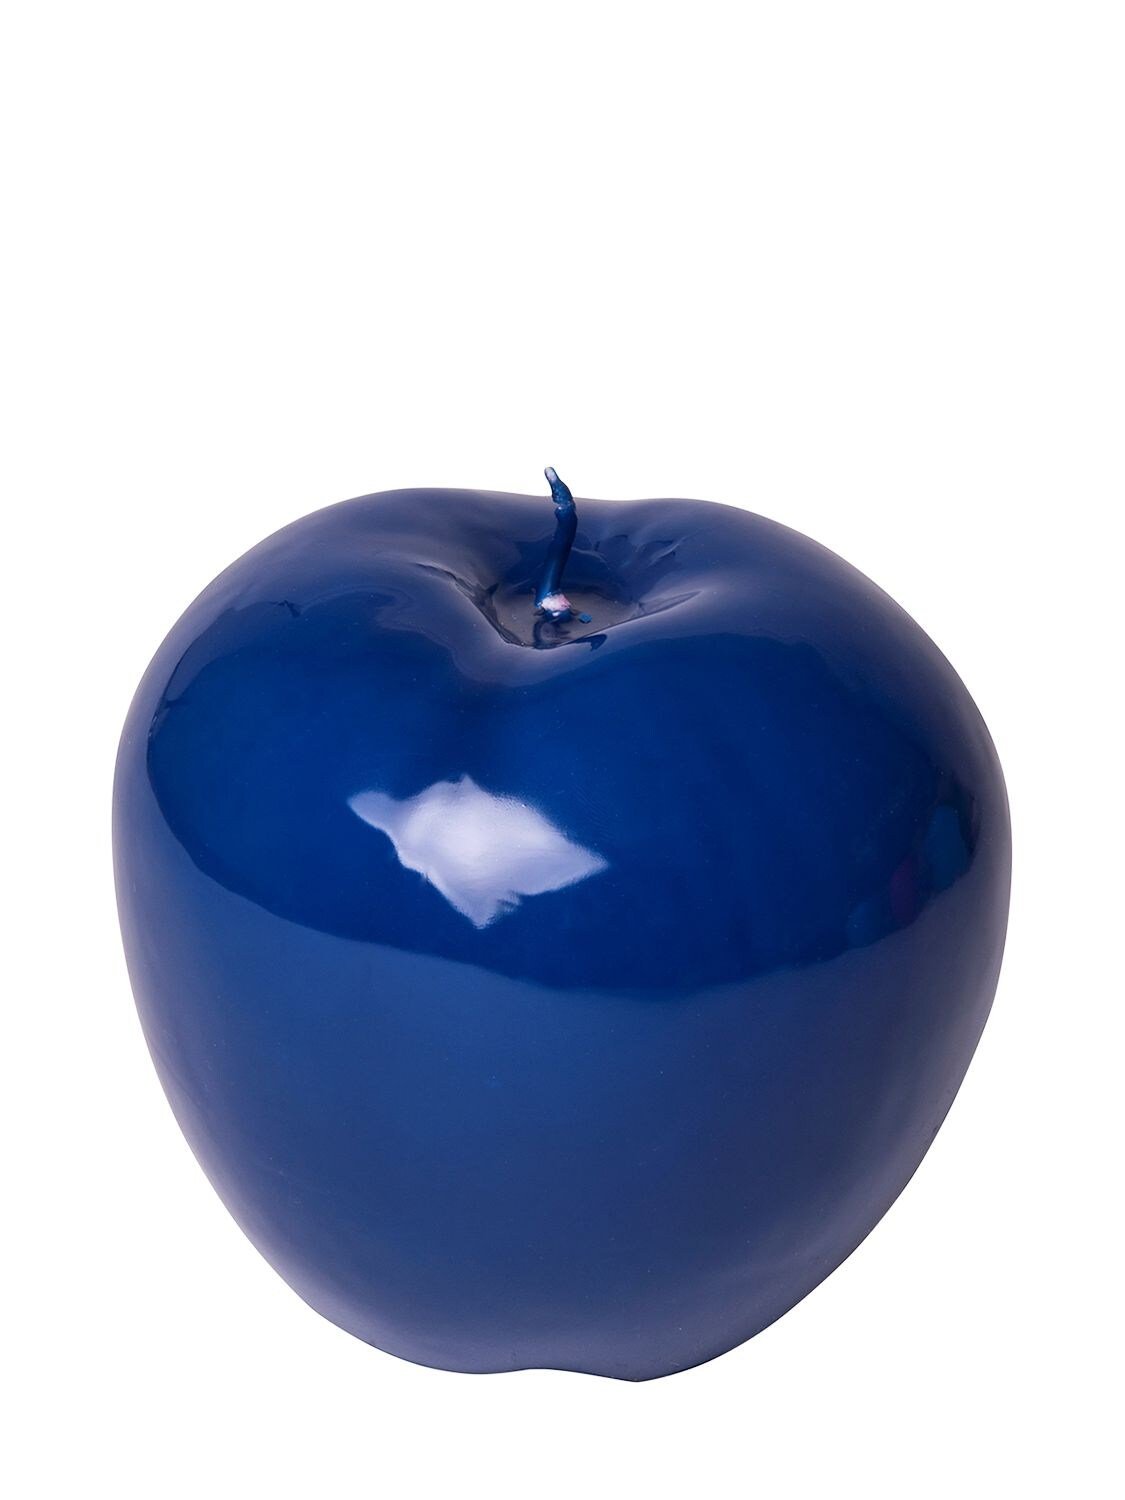 Синее яблоко. Яблоко синего цвета. Лунные яблоки. Яблоки голубого цвета. Красным яблоком луна